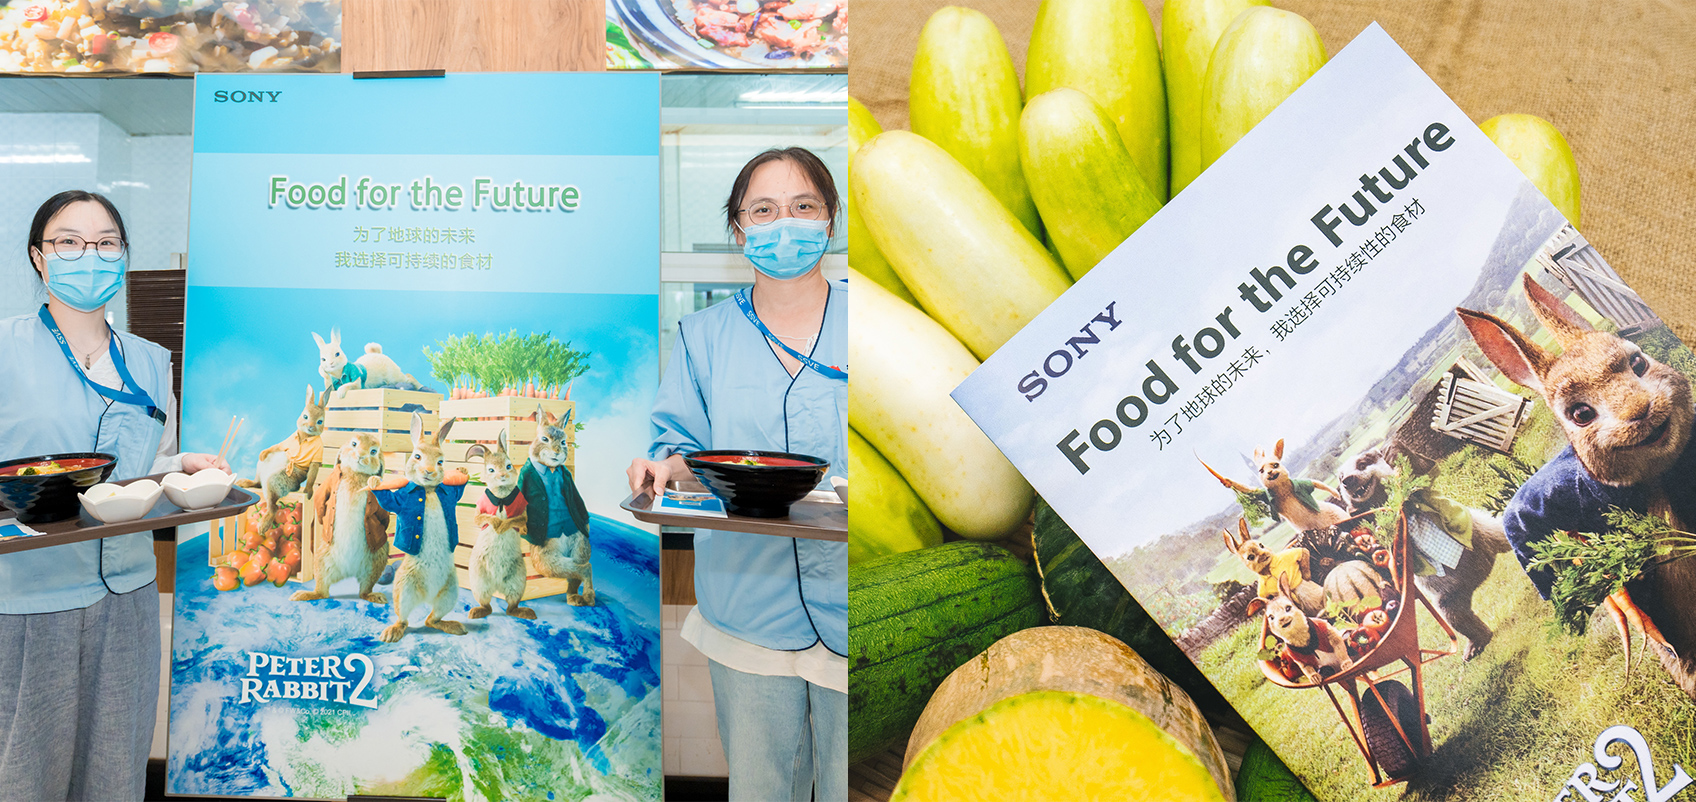 （左）社員が"Food for the Future"と書かれた旗の前にたっている（右）野菜と"Food for the Future”と書かれたパンフレット